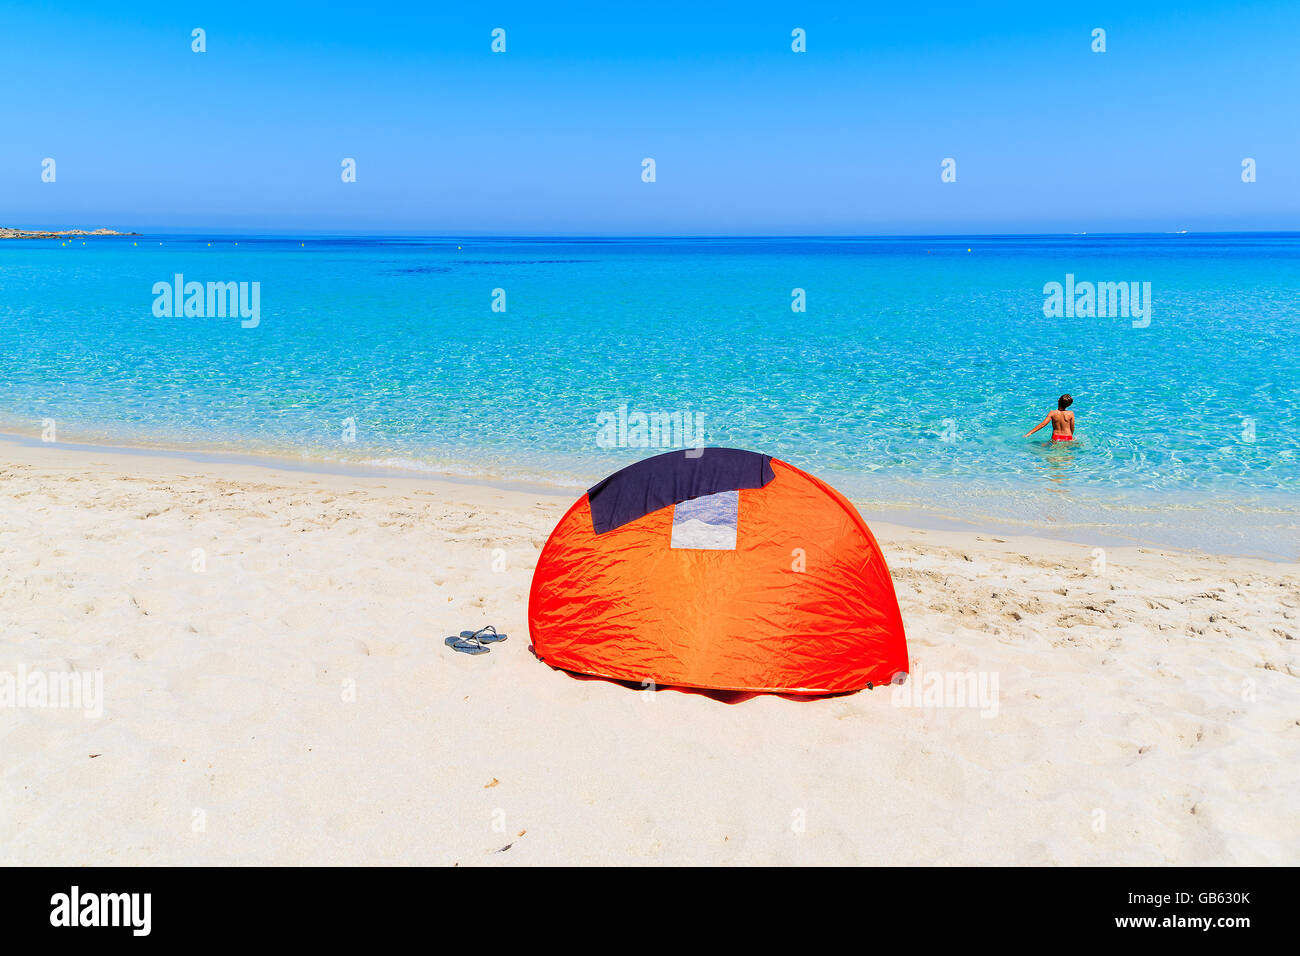 Sonnenschutz-Zelt auf sandigen Bodri Strand und junge jungen Entspannung in Wasser, Korsika, Frankreich Stockfoto